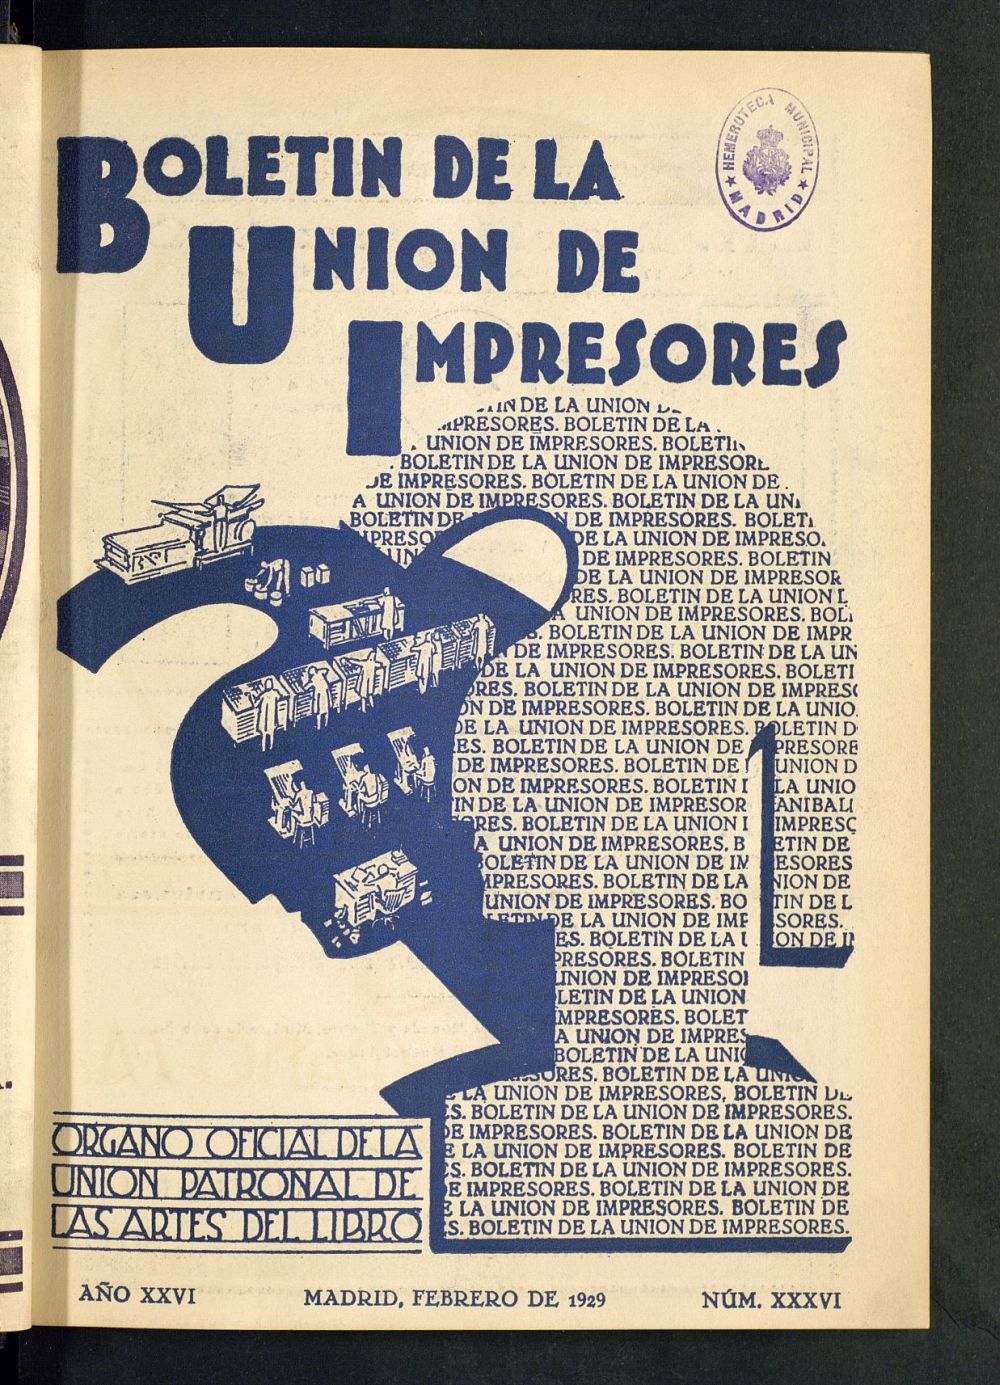 Boletn de la unin de impresores : rgano de la unin patronal de las artes del libro de febrero de 1929